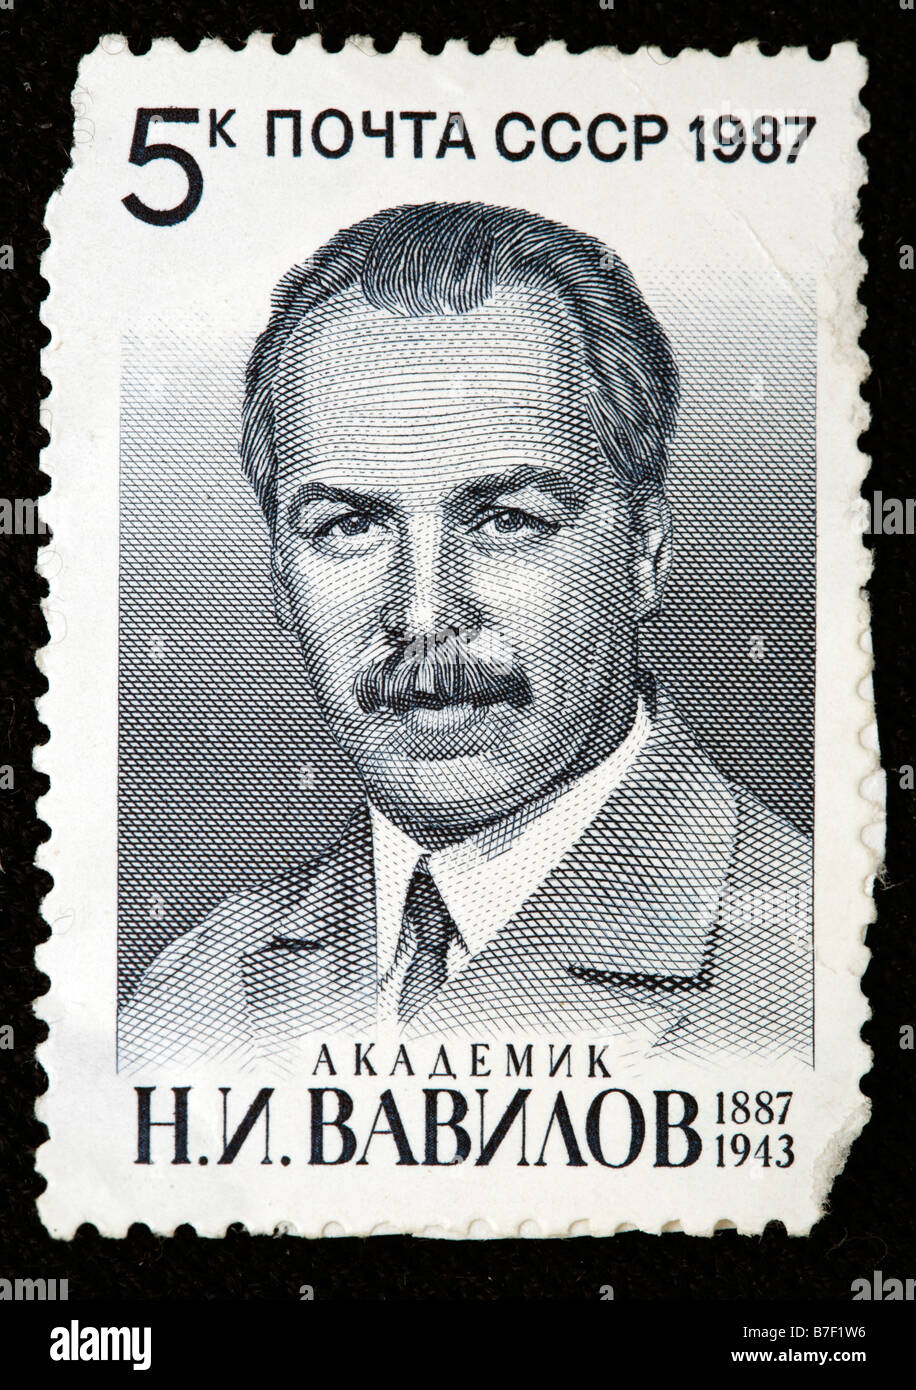 Nikolai Vavilov (1887-1943), Russian Soviet botanist and geneticist, postage stamp, USSR, 1987 Stock Photo